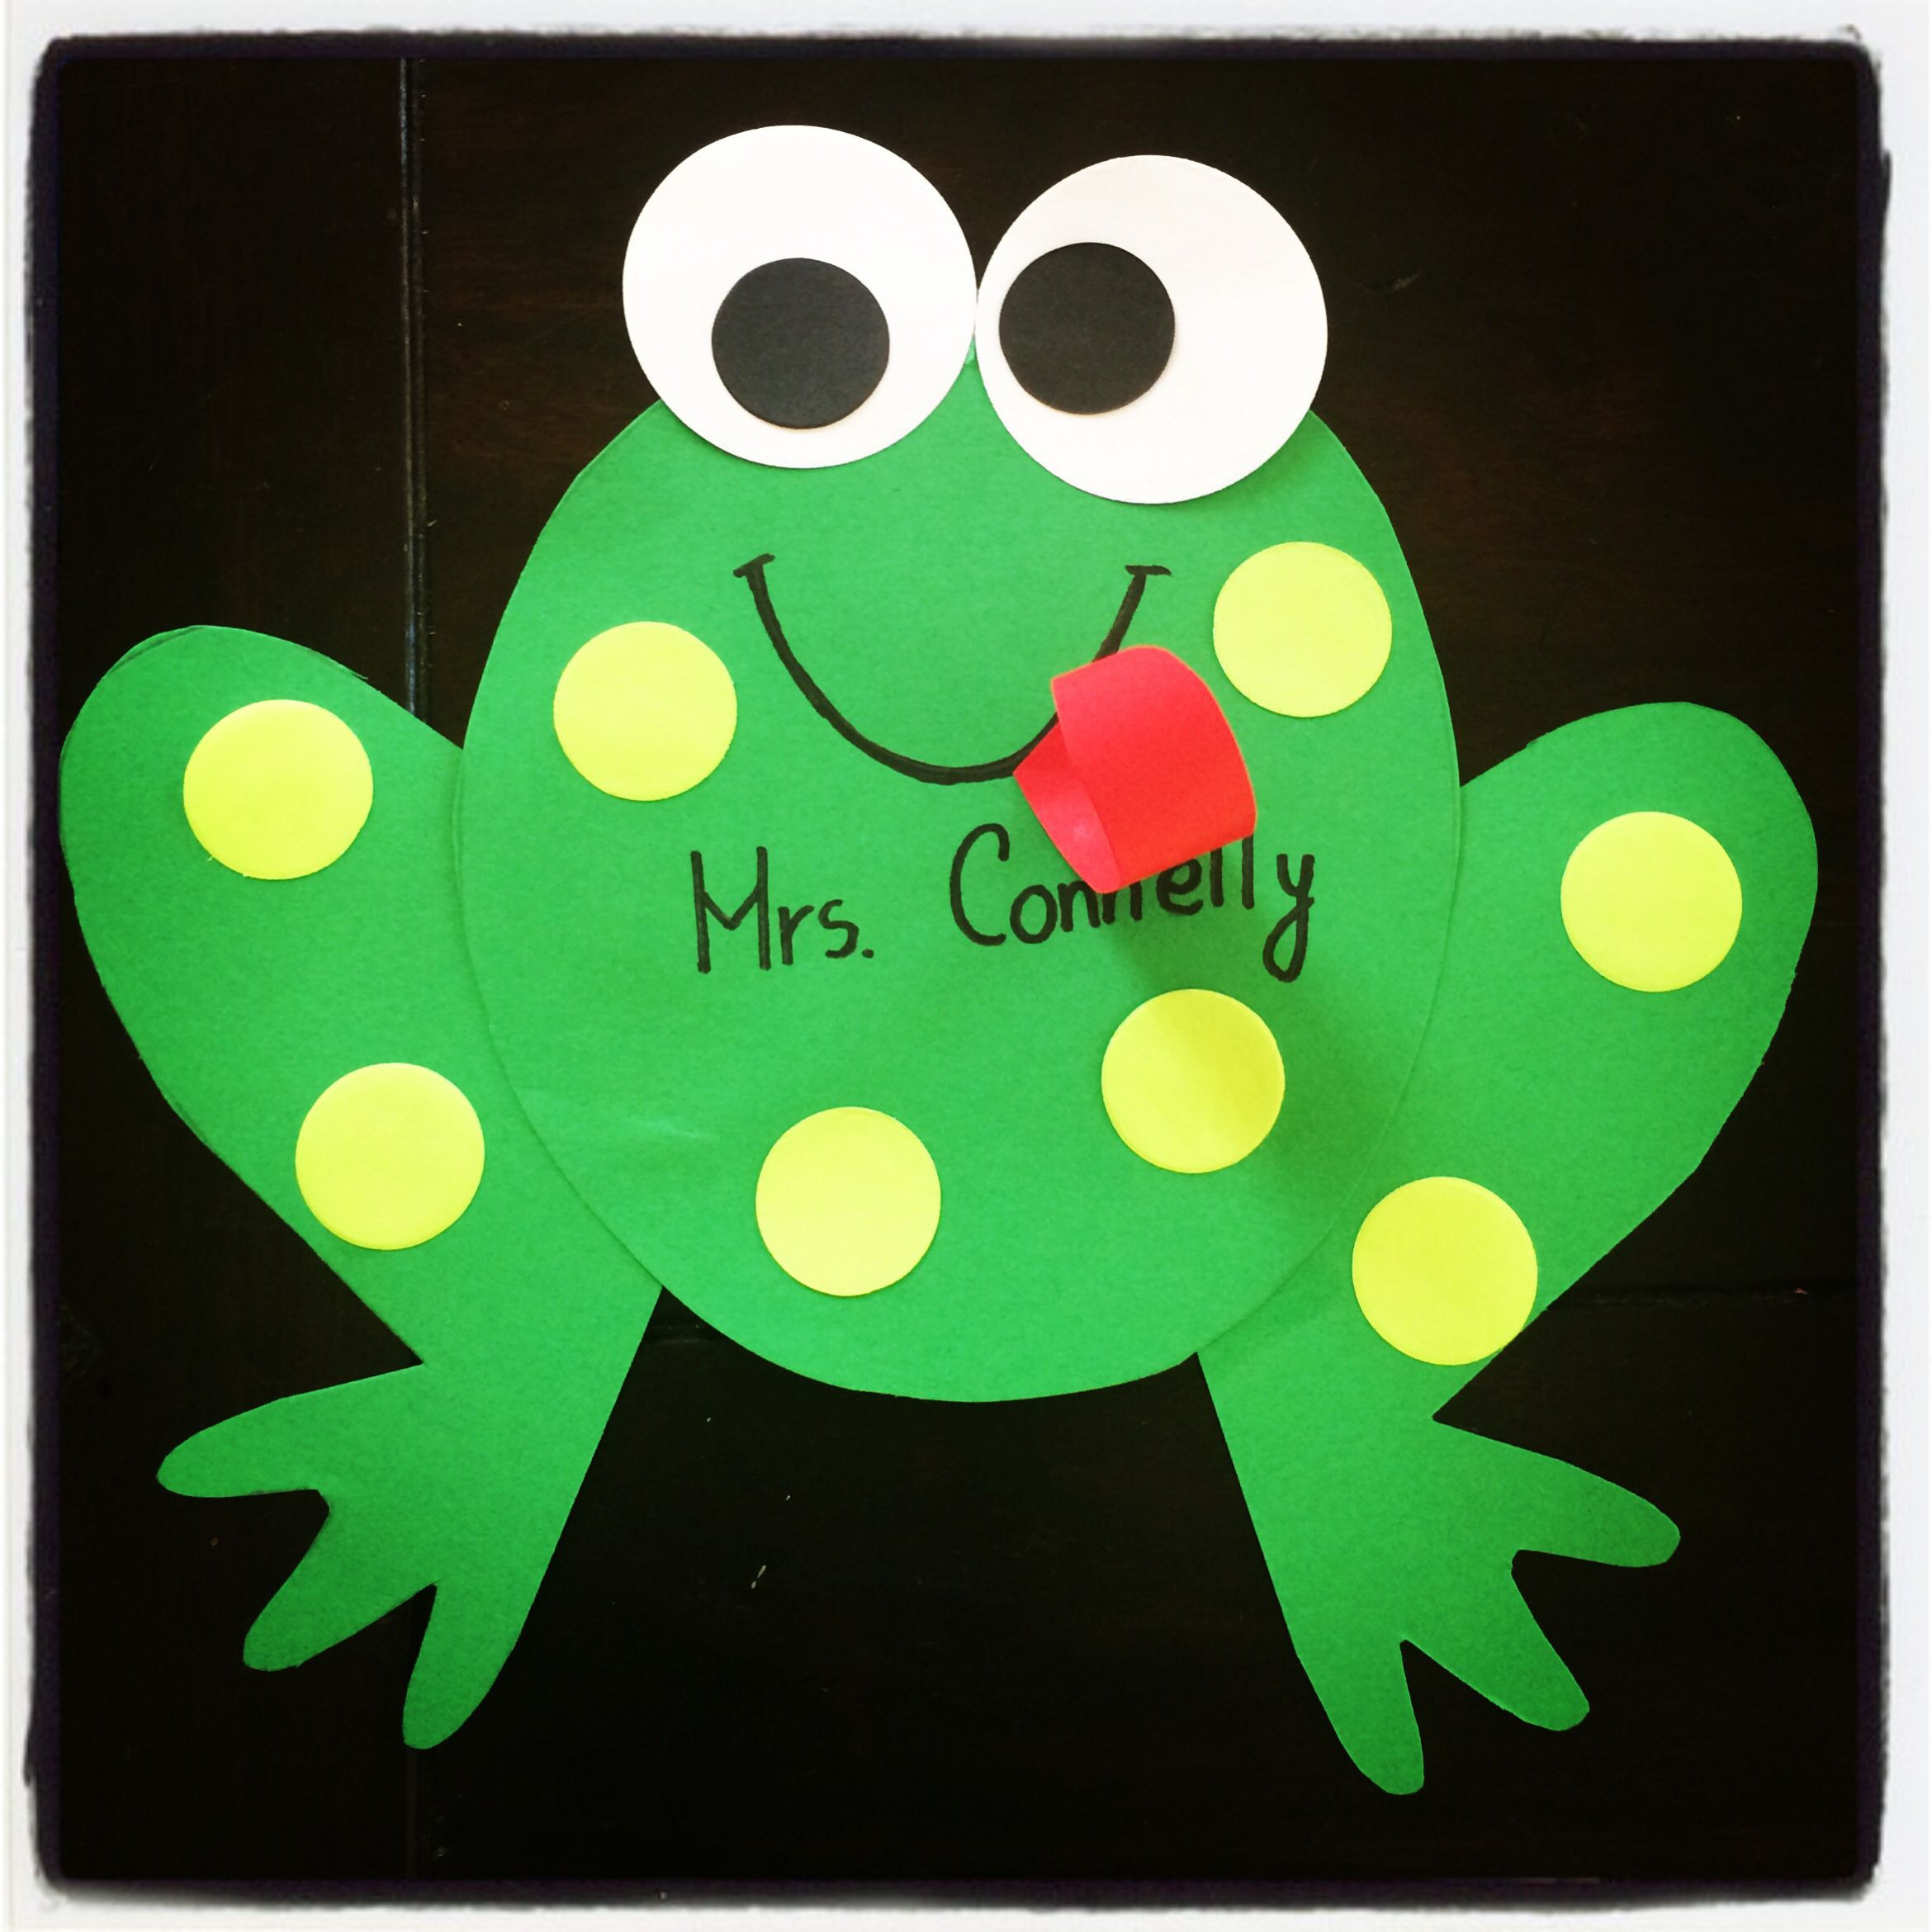 Frog Projects For Preschoolers
 Kindergarten Frog craft hop into spring